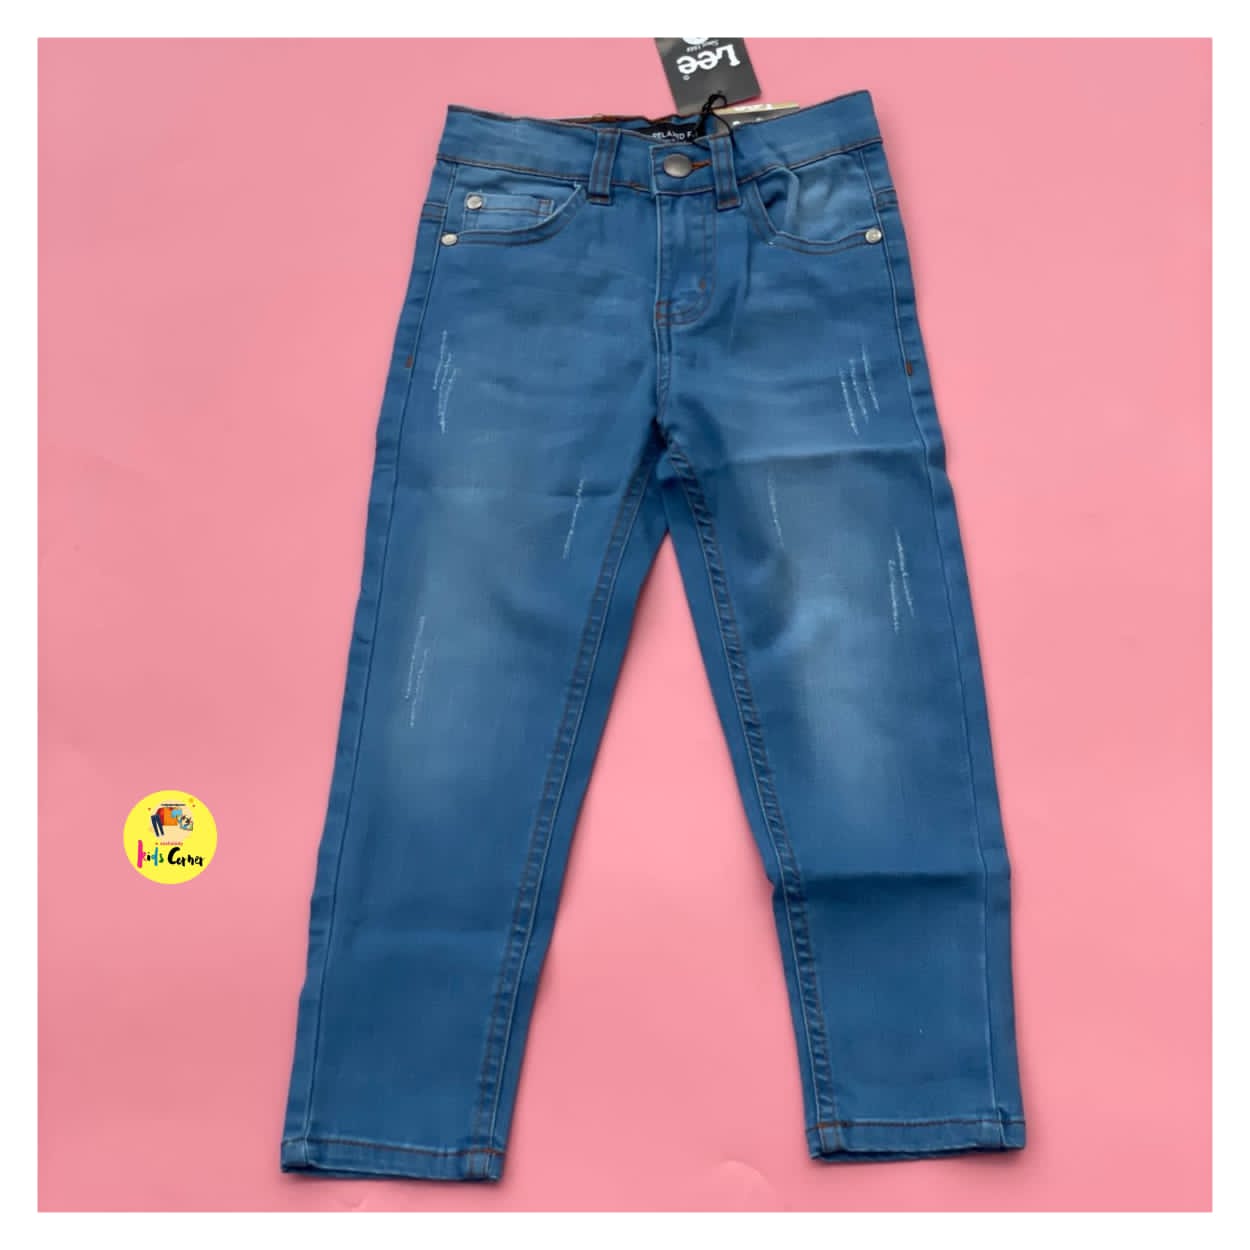 Lee Jeans – light blue